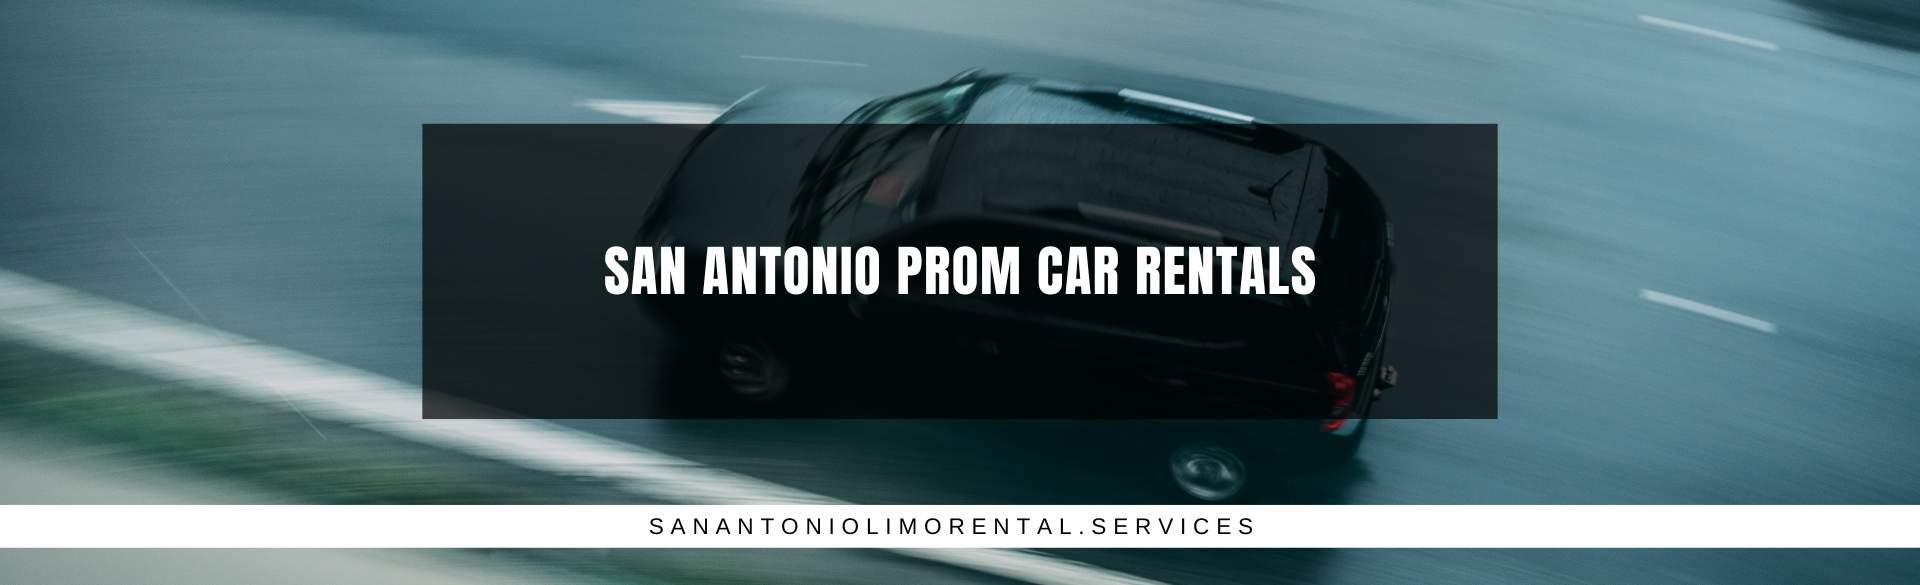 San Antonio Prom Car Rentals